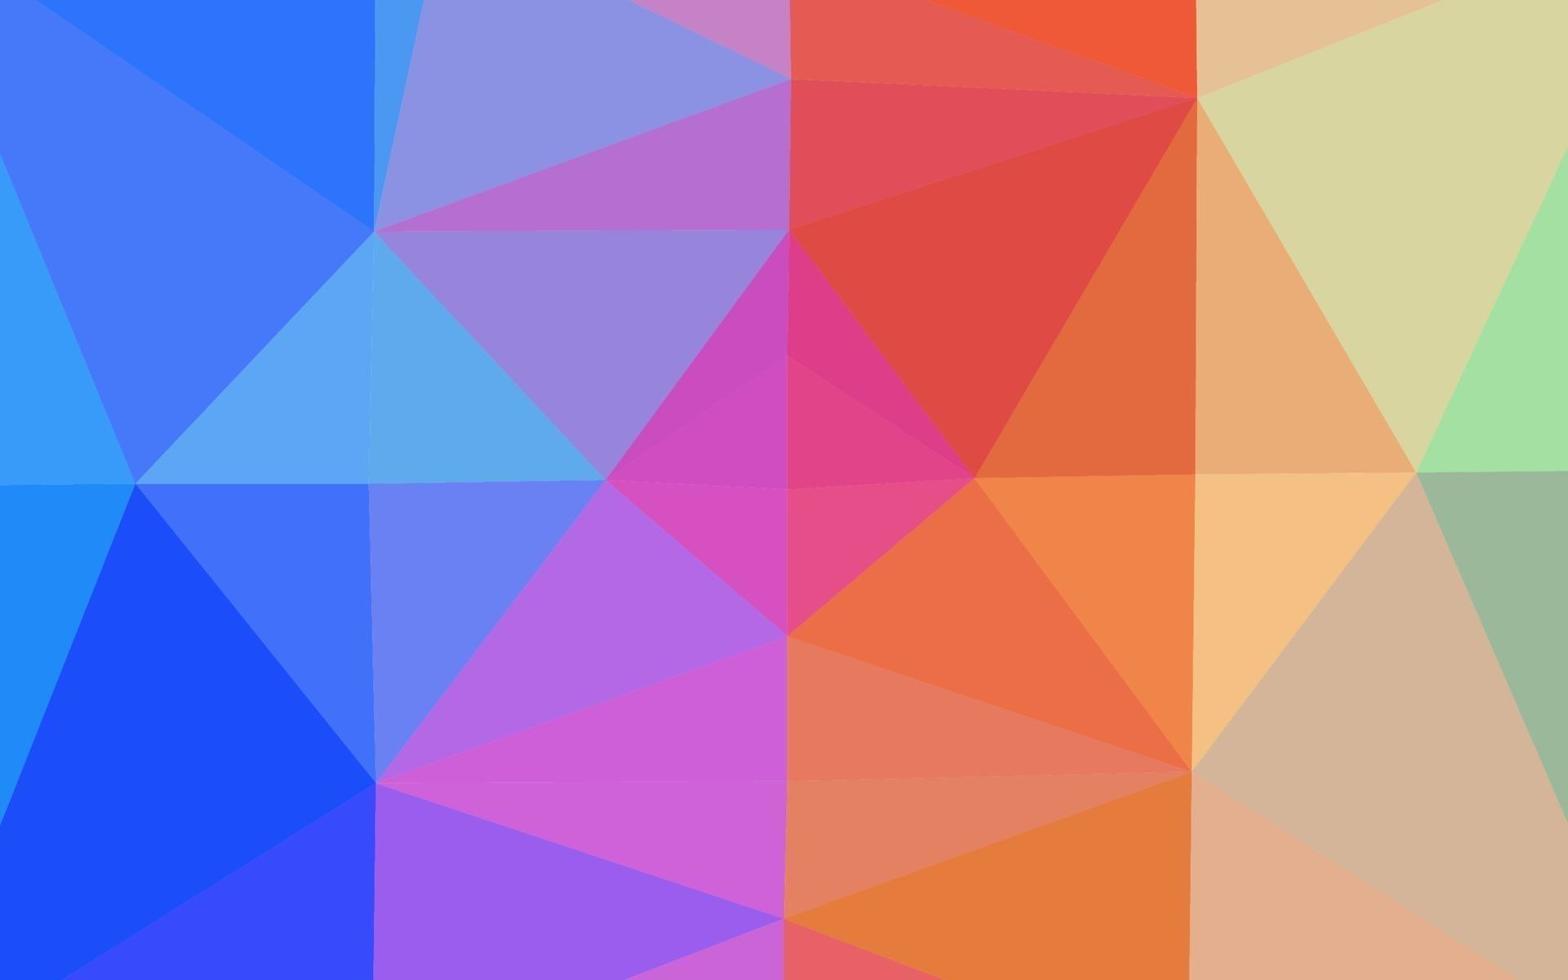 helles mehrfarbiges, abstraktes Layout des Regenbogenvektorpolygons. vektor